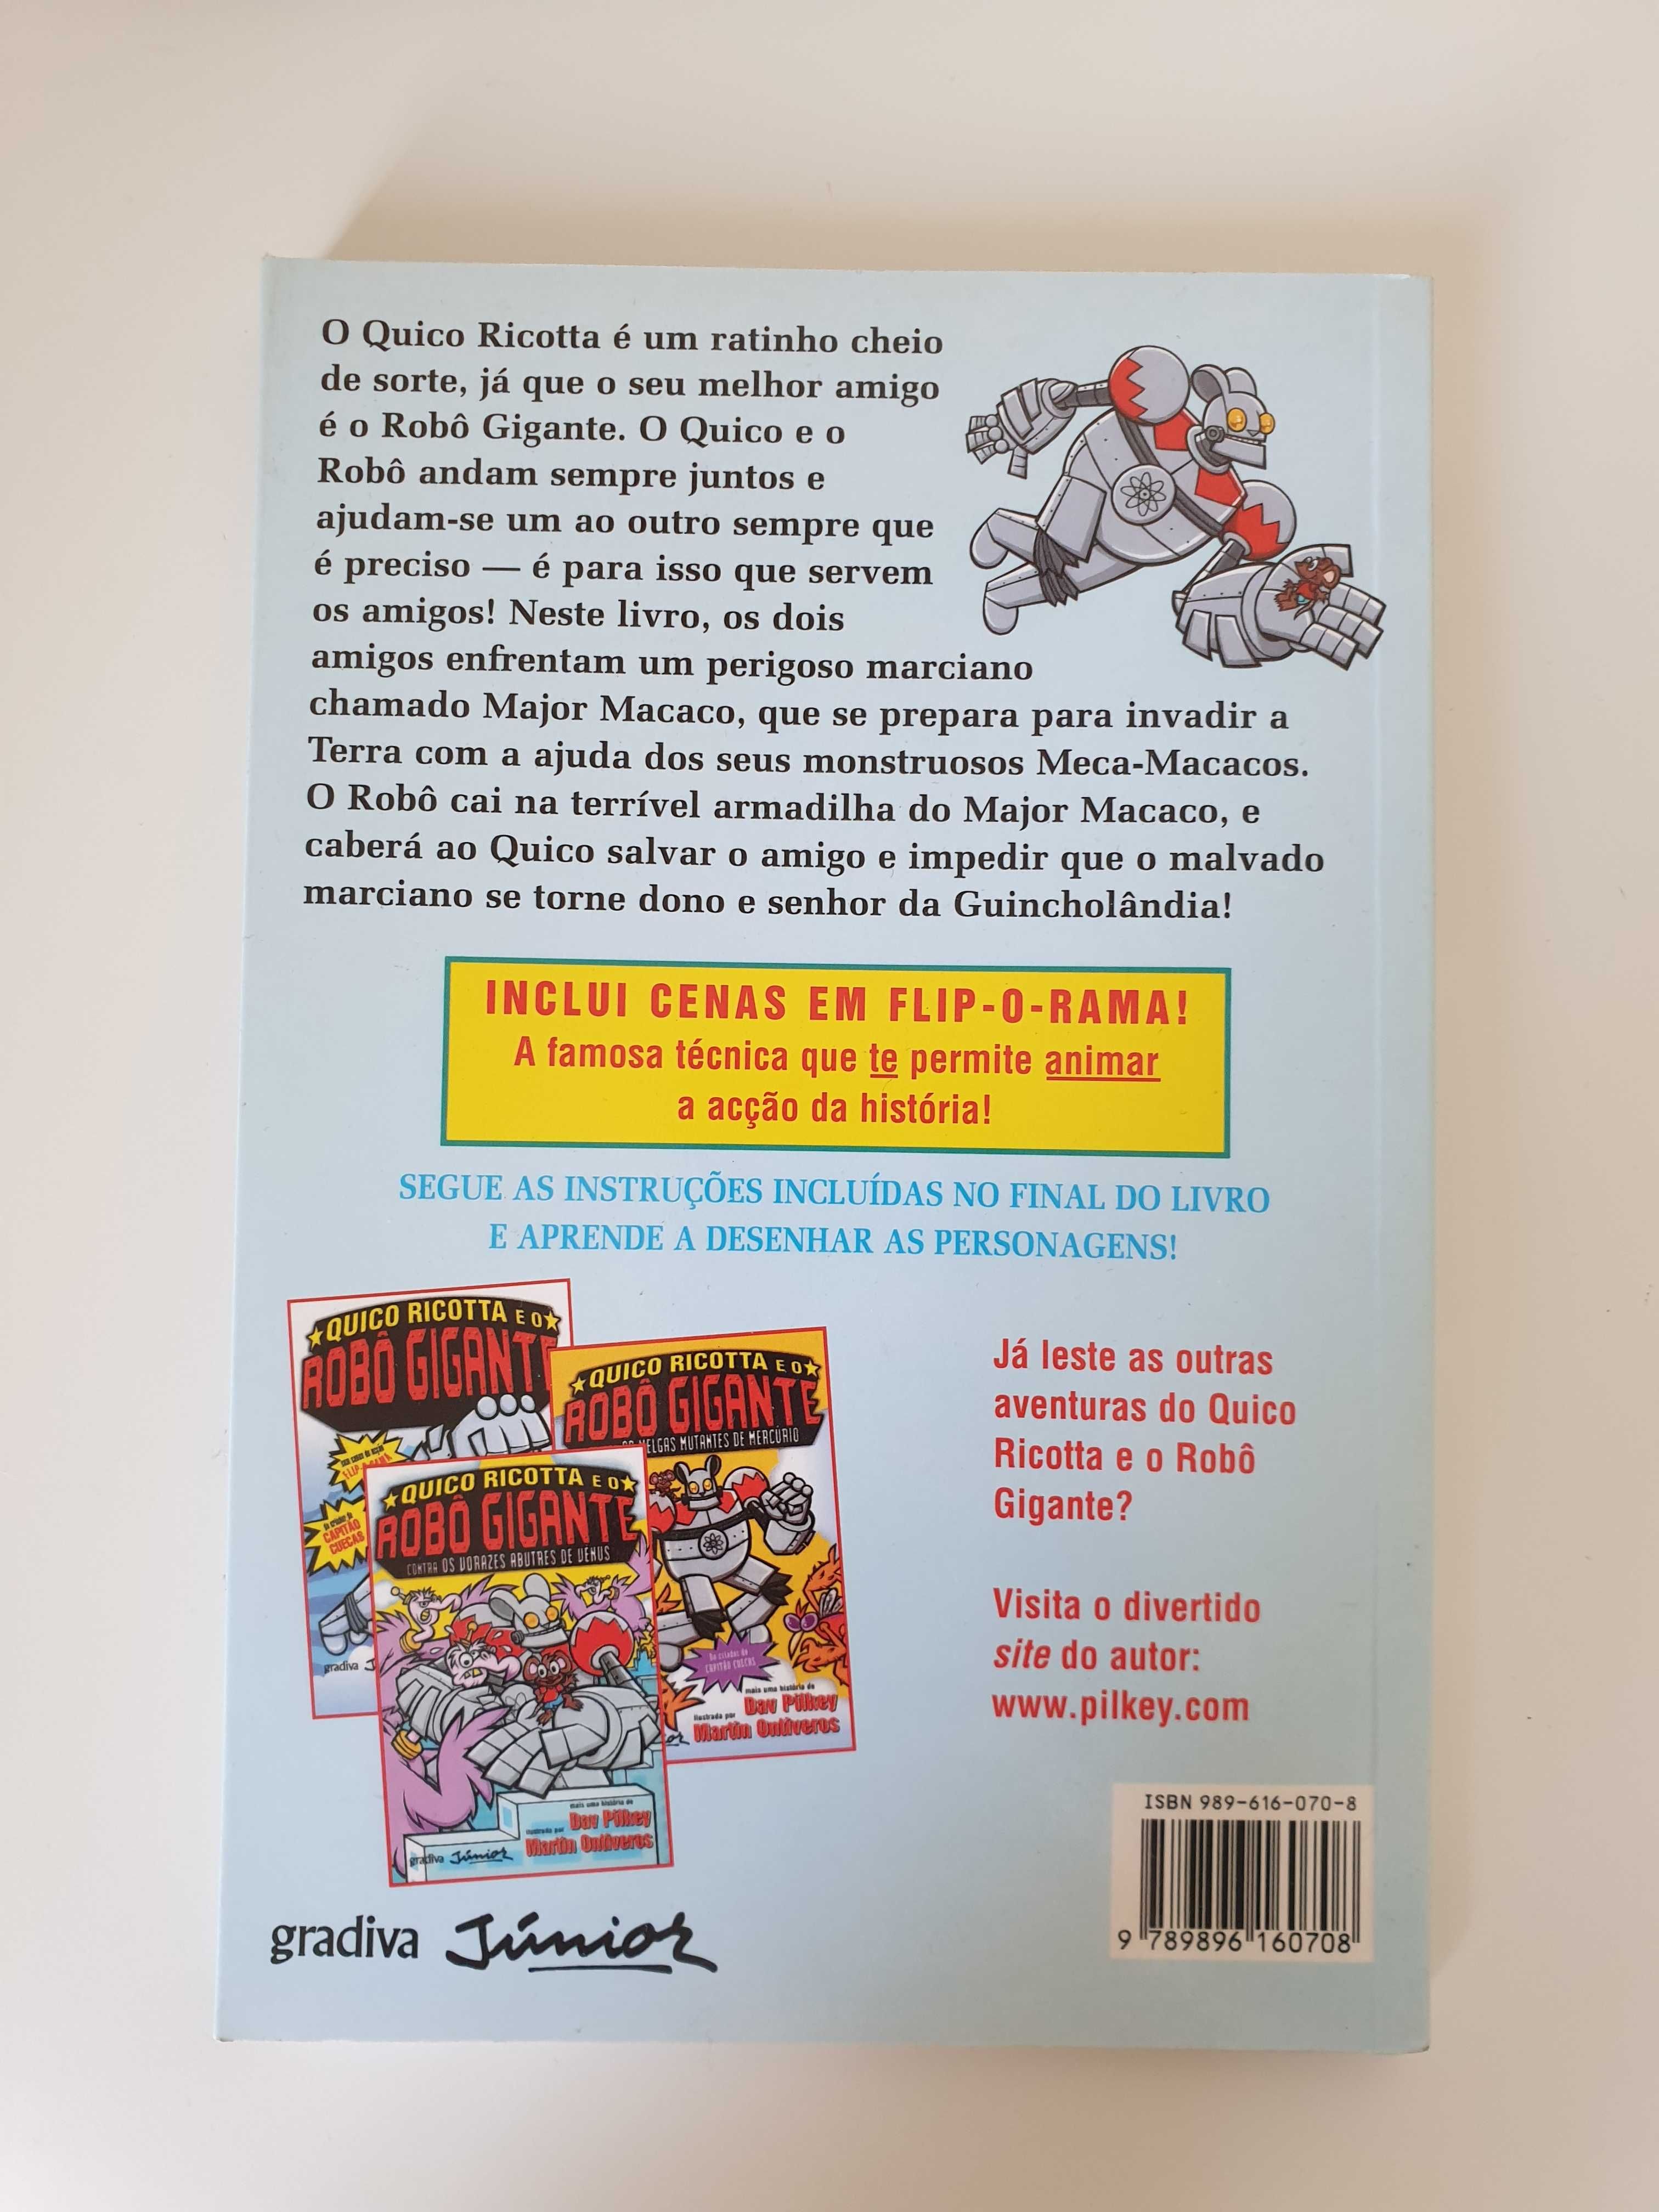 Livro "Quico Ricotta e o Robô Gigante Contra os Meca-Macacos de Marte"